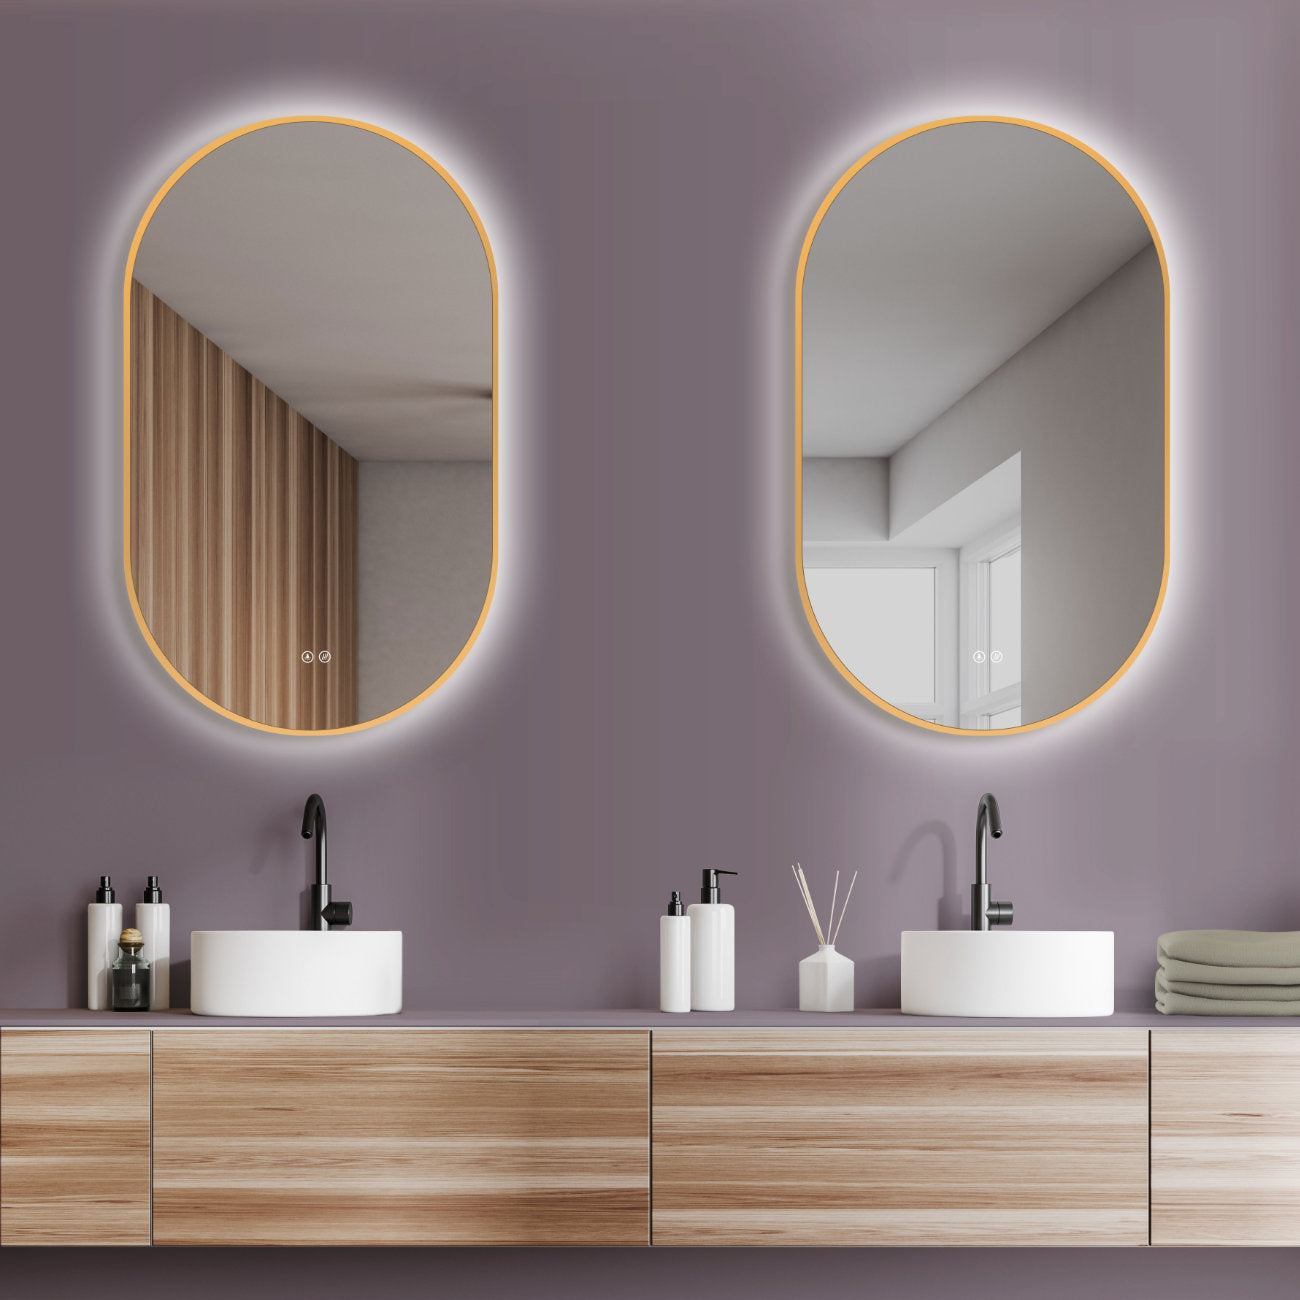 LED Badspiegel: Lichtwechsel, ovaler Design-Spiegel, Antibeschlag-Funktion, Gold-Metallrahmen